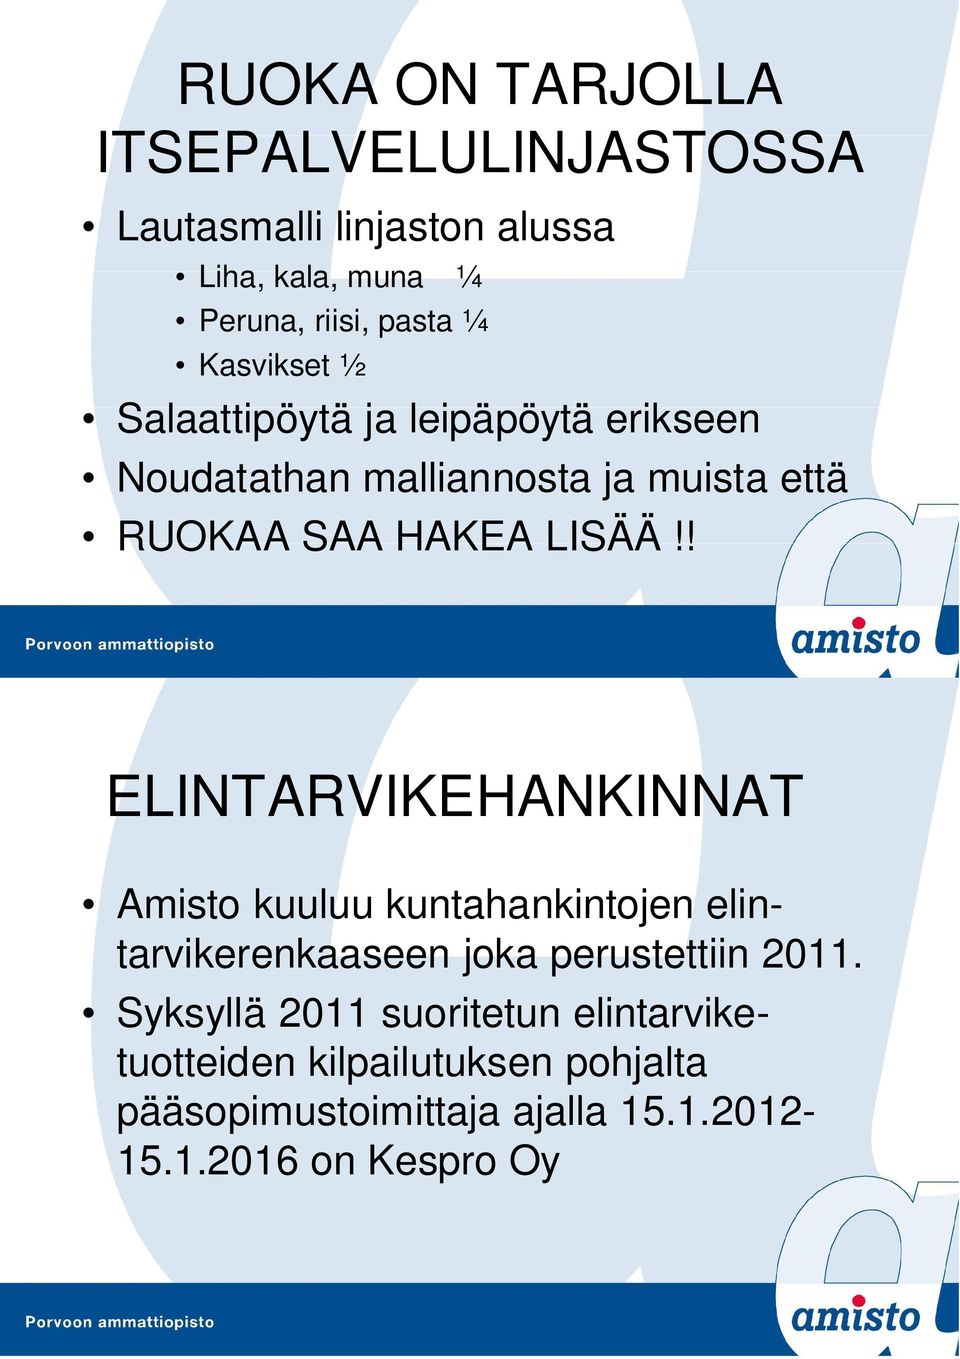 ! ELINTARVIKEHANKINNAT Amisto kuuluu kuntahankintojen elintarvikerenkaaseen joka perustettiin 2011.